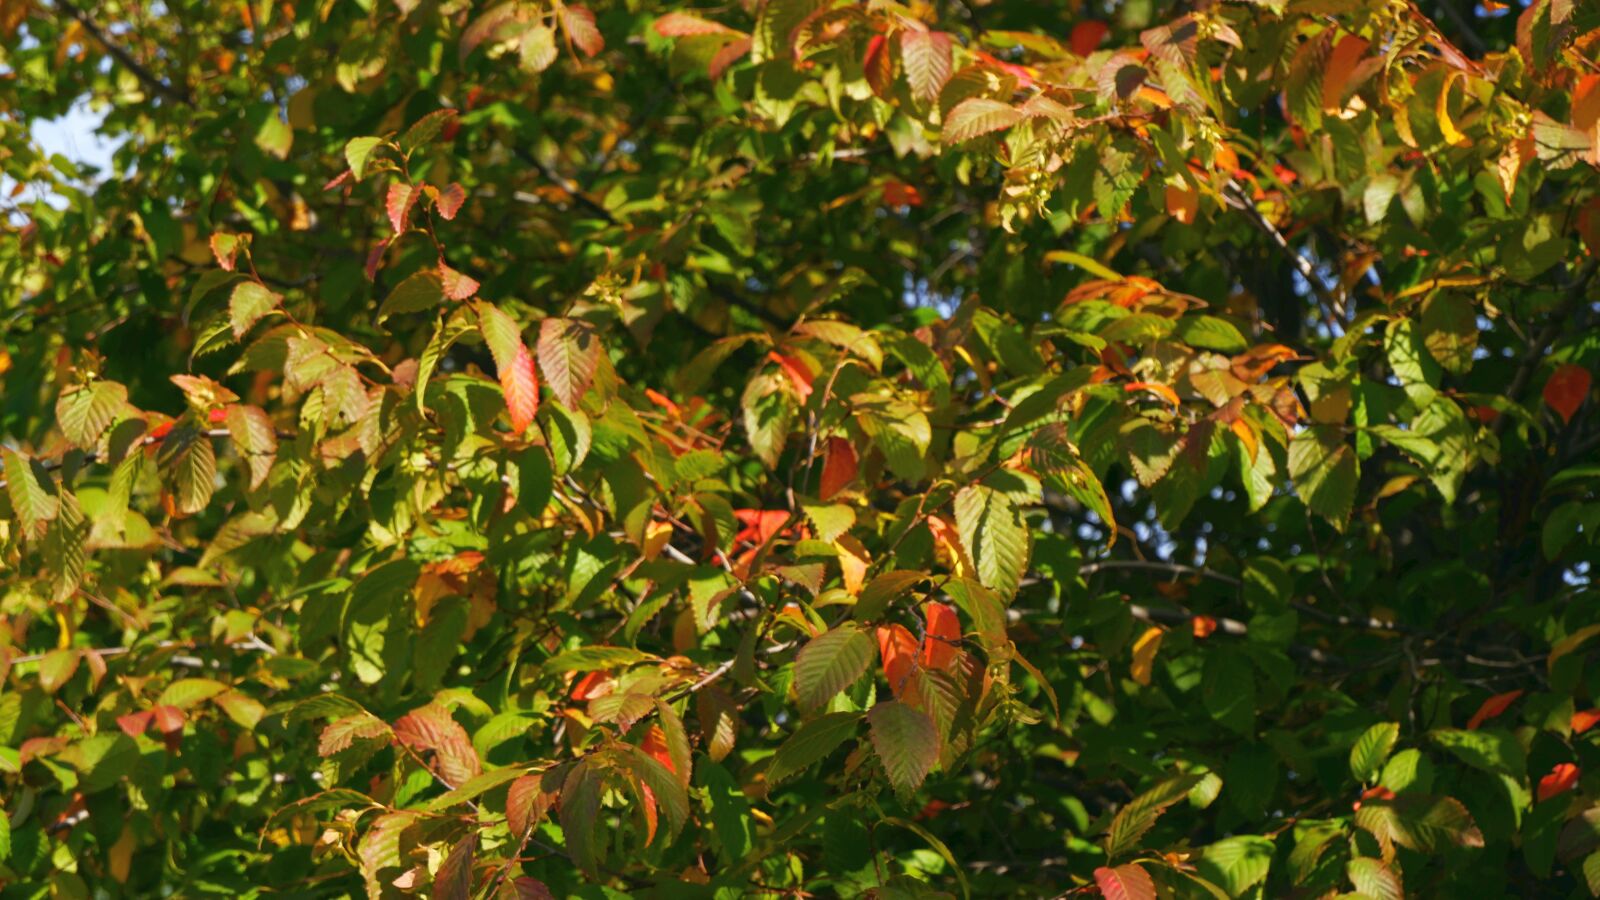 Fujifilm X-A5 sample photo. Tree, foliage, colorful photography